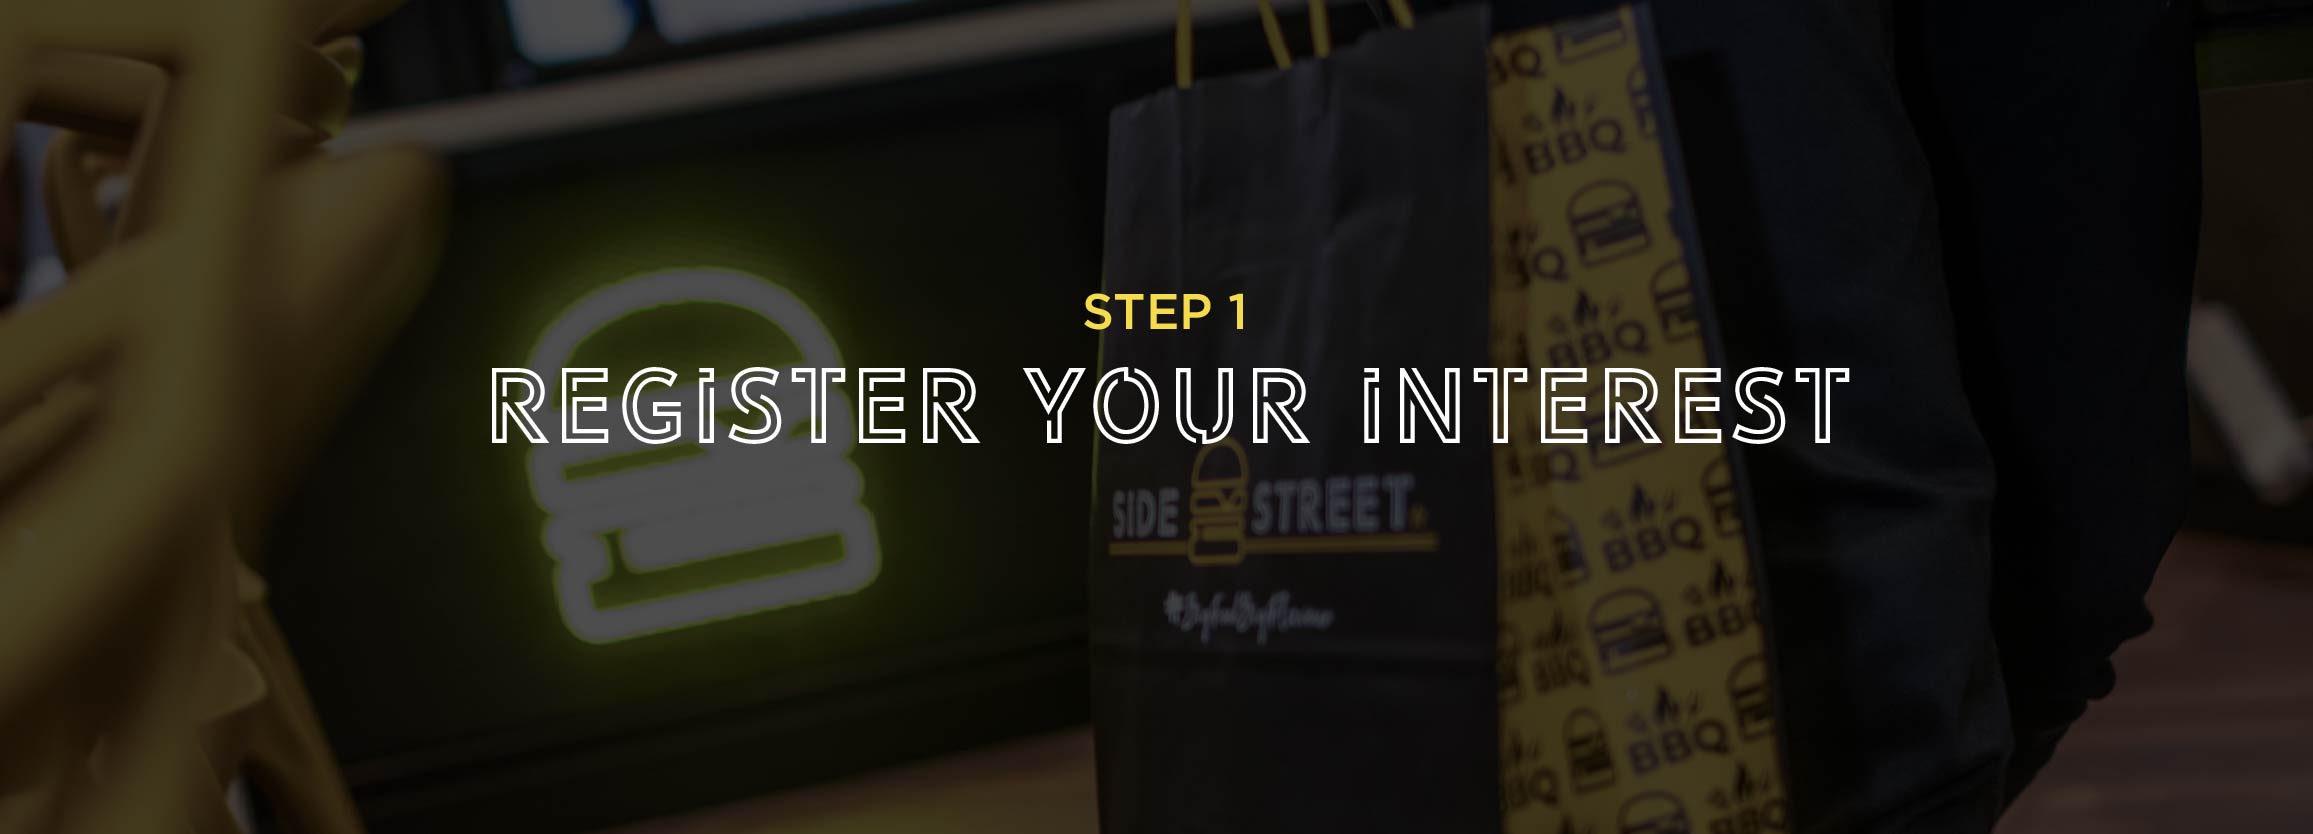 Step 1 - Register your interest